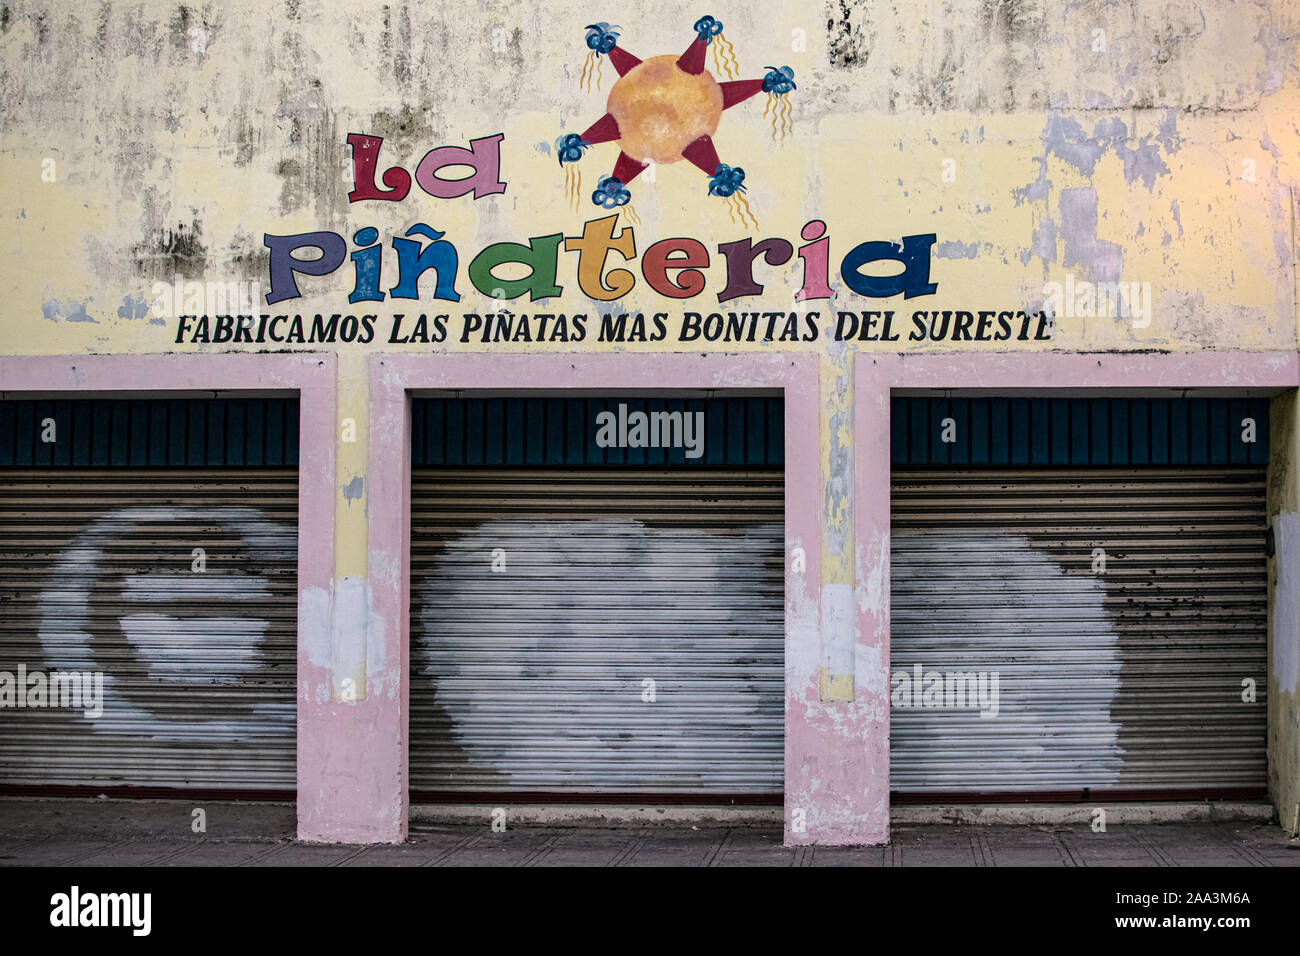 Hell gestrichenen pinata Workshop in Merida, Mexiko. Das Zeichen in Spanischer Sprache lautet: "Pinata Werkstatt. Wir machen die schönsten pinatas im Süden Osten." Stockfoto